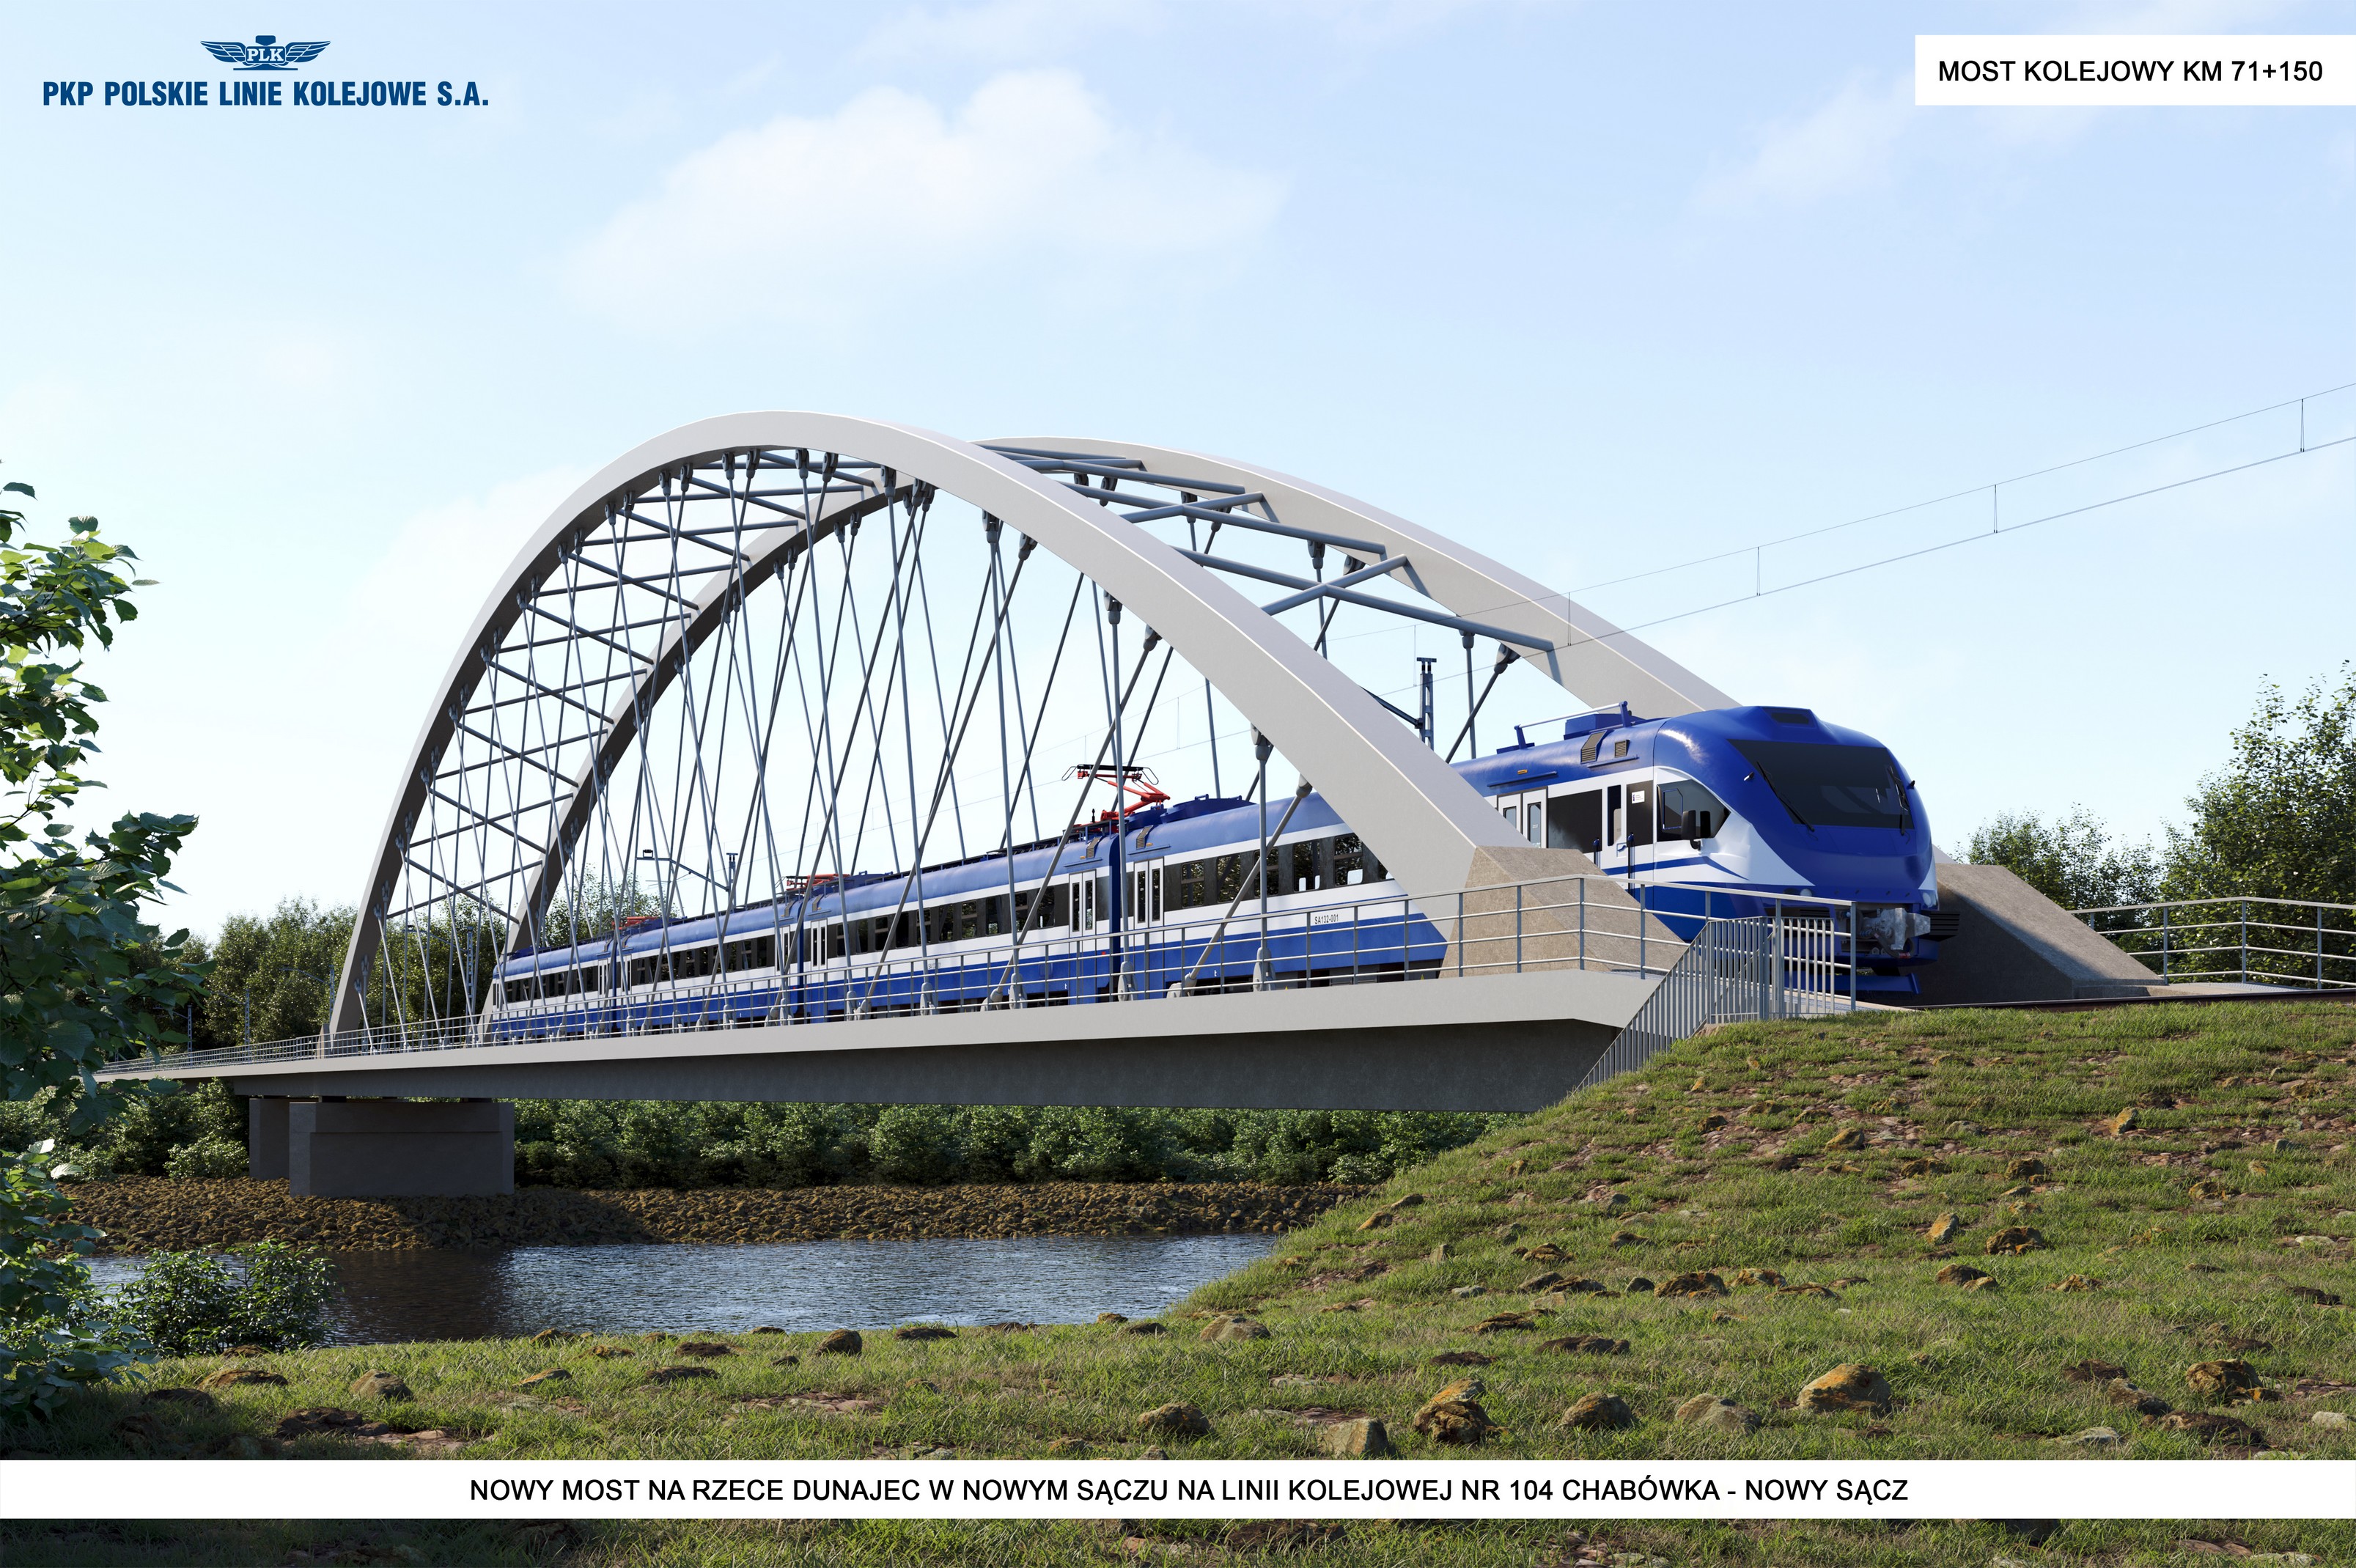 Linia Kolejowa 104 Odcinek E - przeslo nurtowe mostu kolejowego na rzece Dunajec w Nowym Saczu w km proj. 71 150